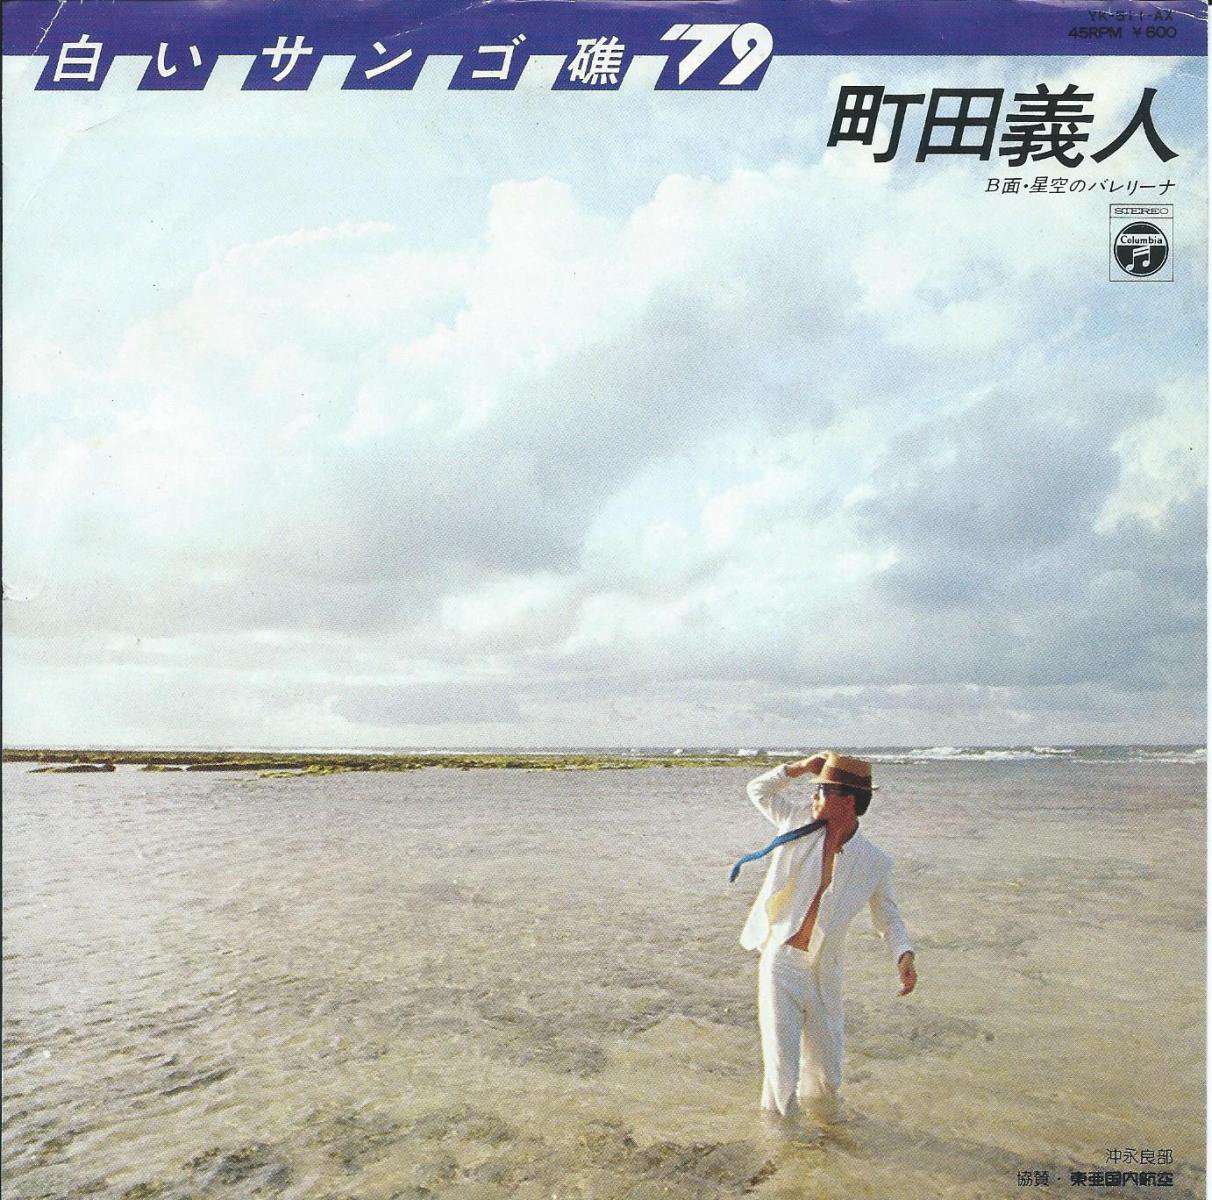 町田義人 YOSHITO MACHIDA / 白いサンゴ礁 '79 / 星空のバレリーナ (7